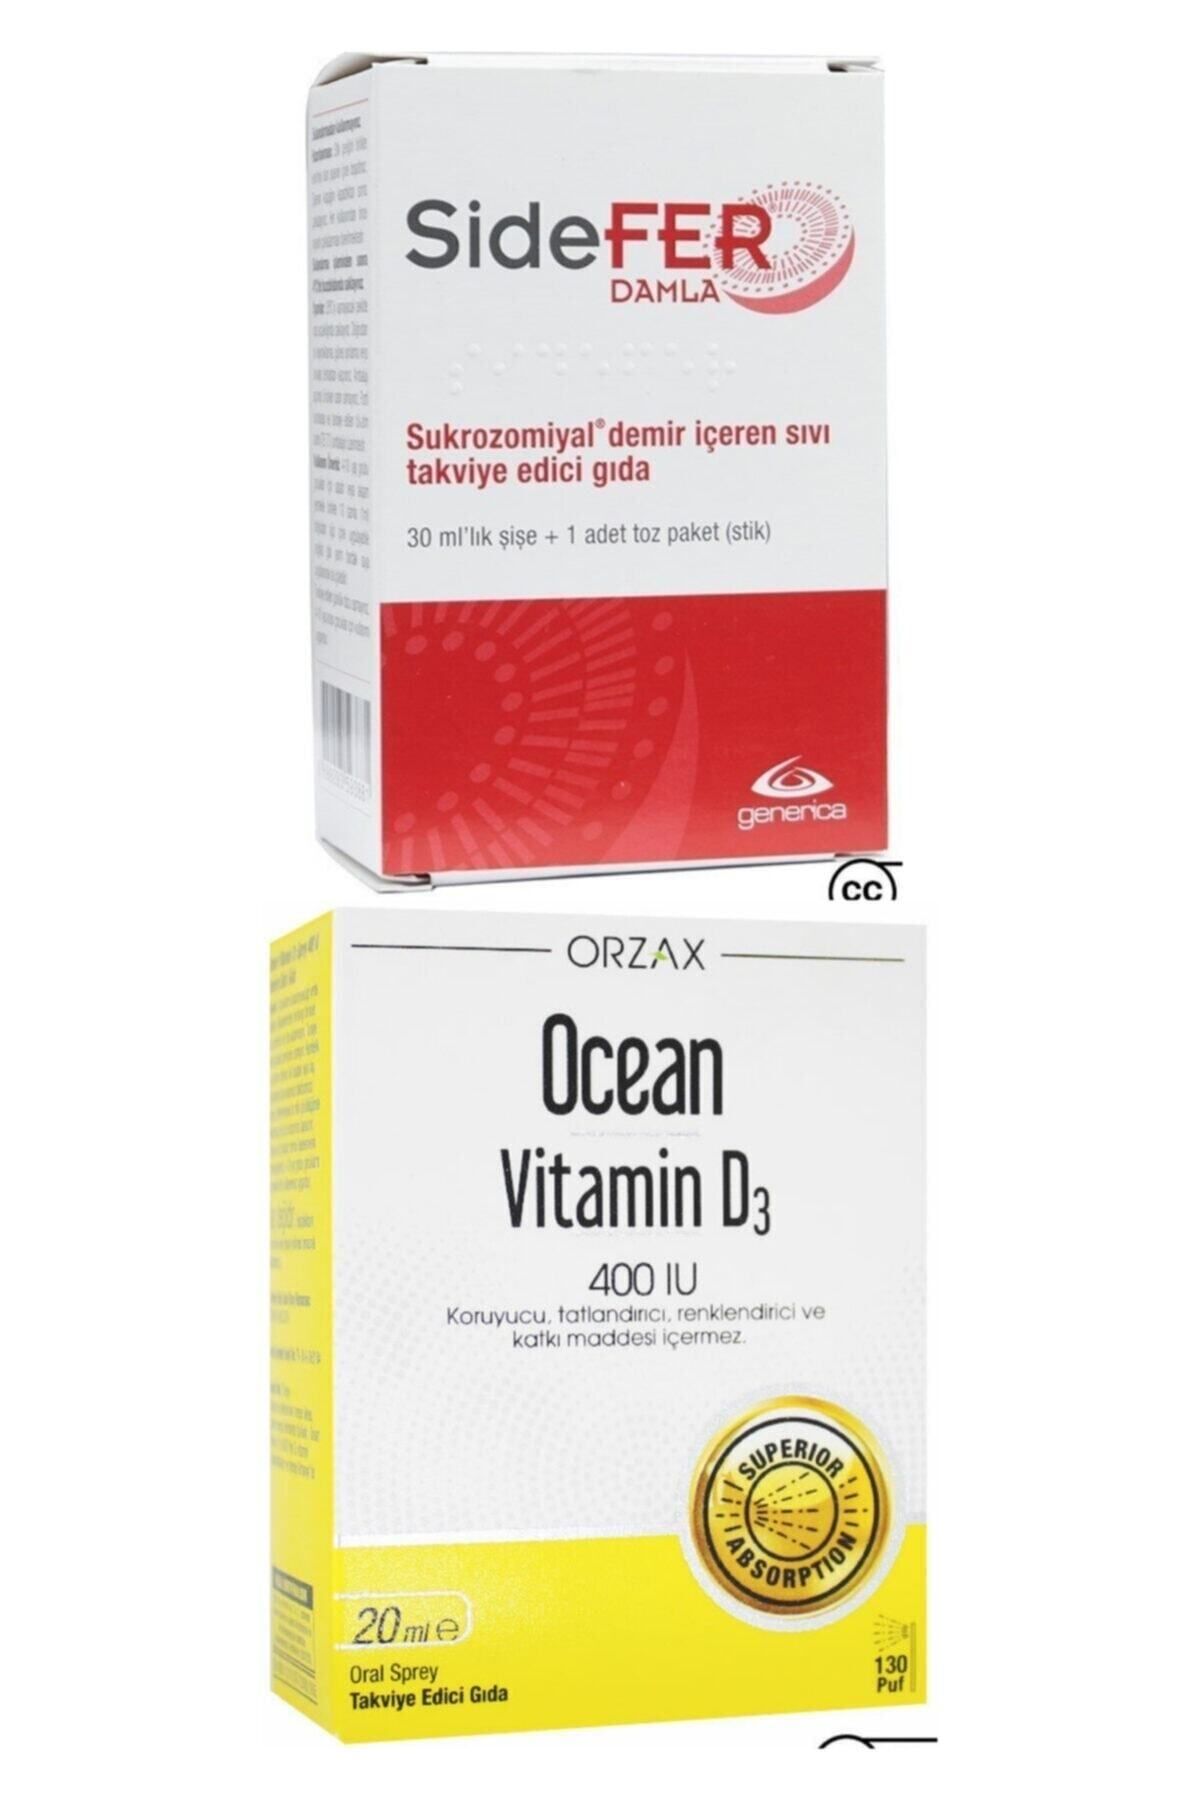 Sidefer Damla 30 Ml Ve Ocean Vitamin D3 400ıu Sprey 20ml